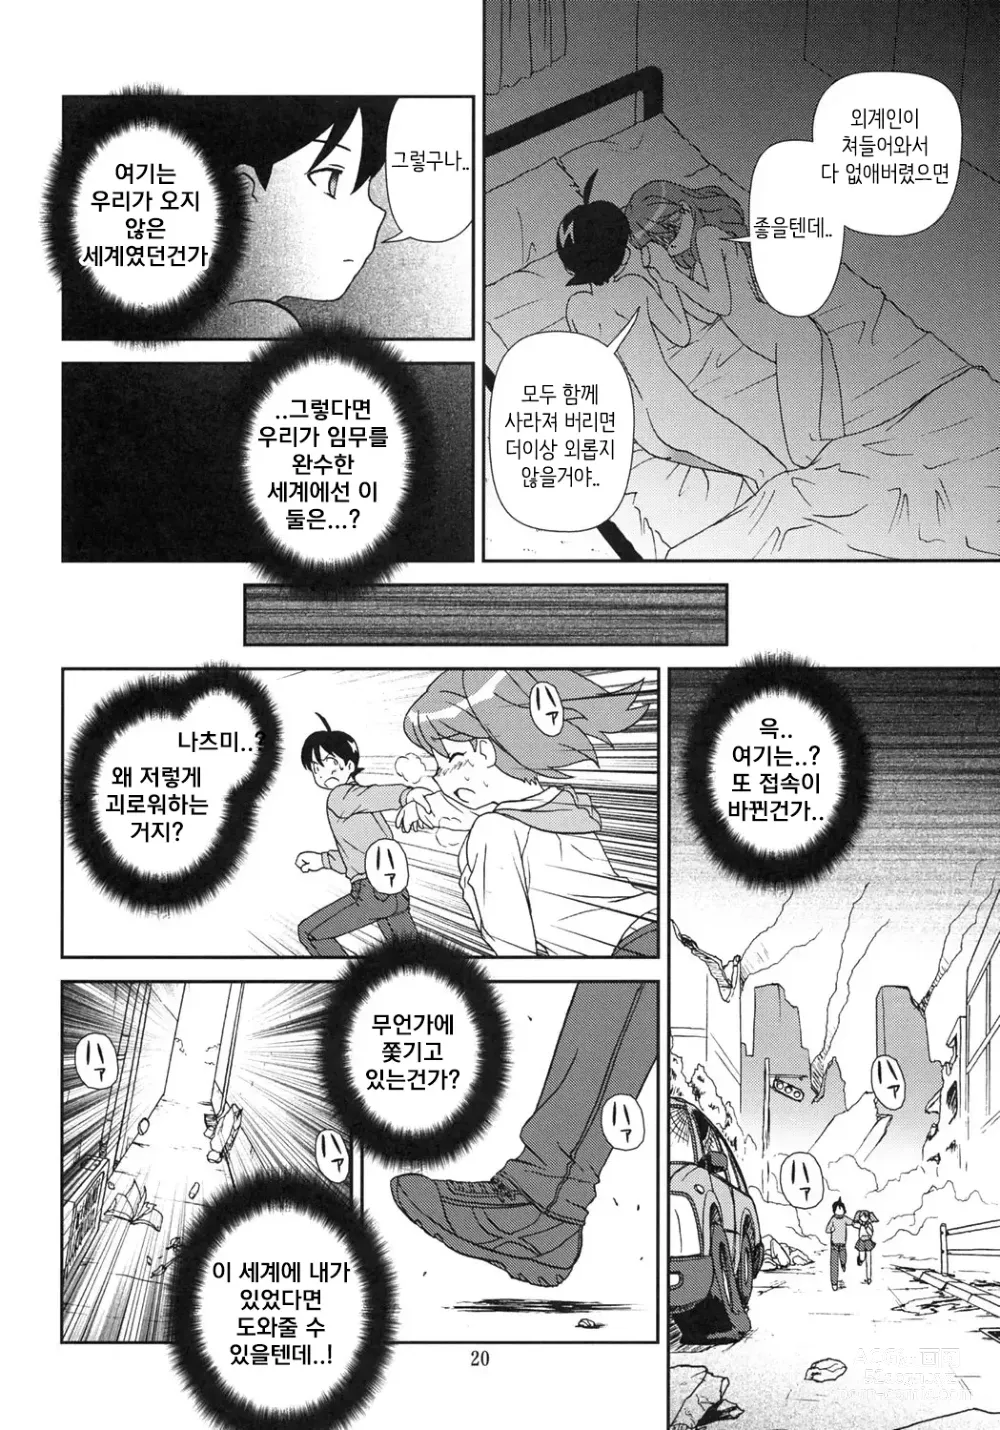 Page 19 of doujinshi 마음이 문제